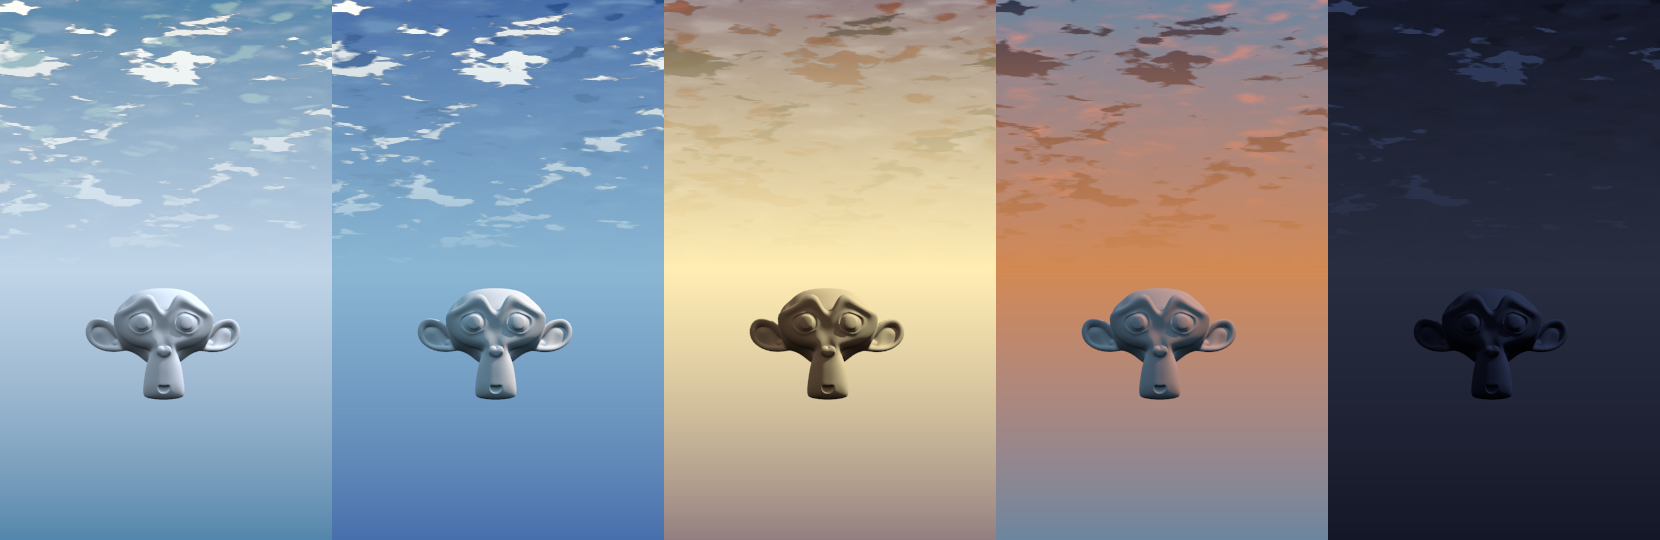 Blender3D Procedural Texture Cloud